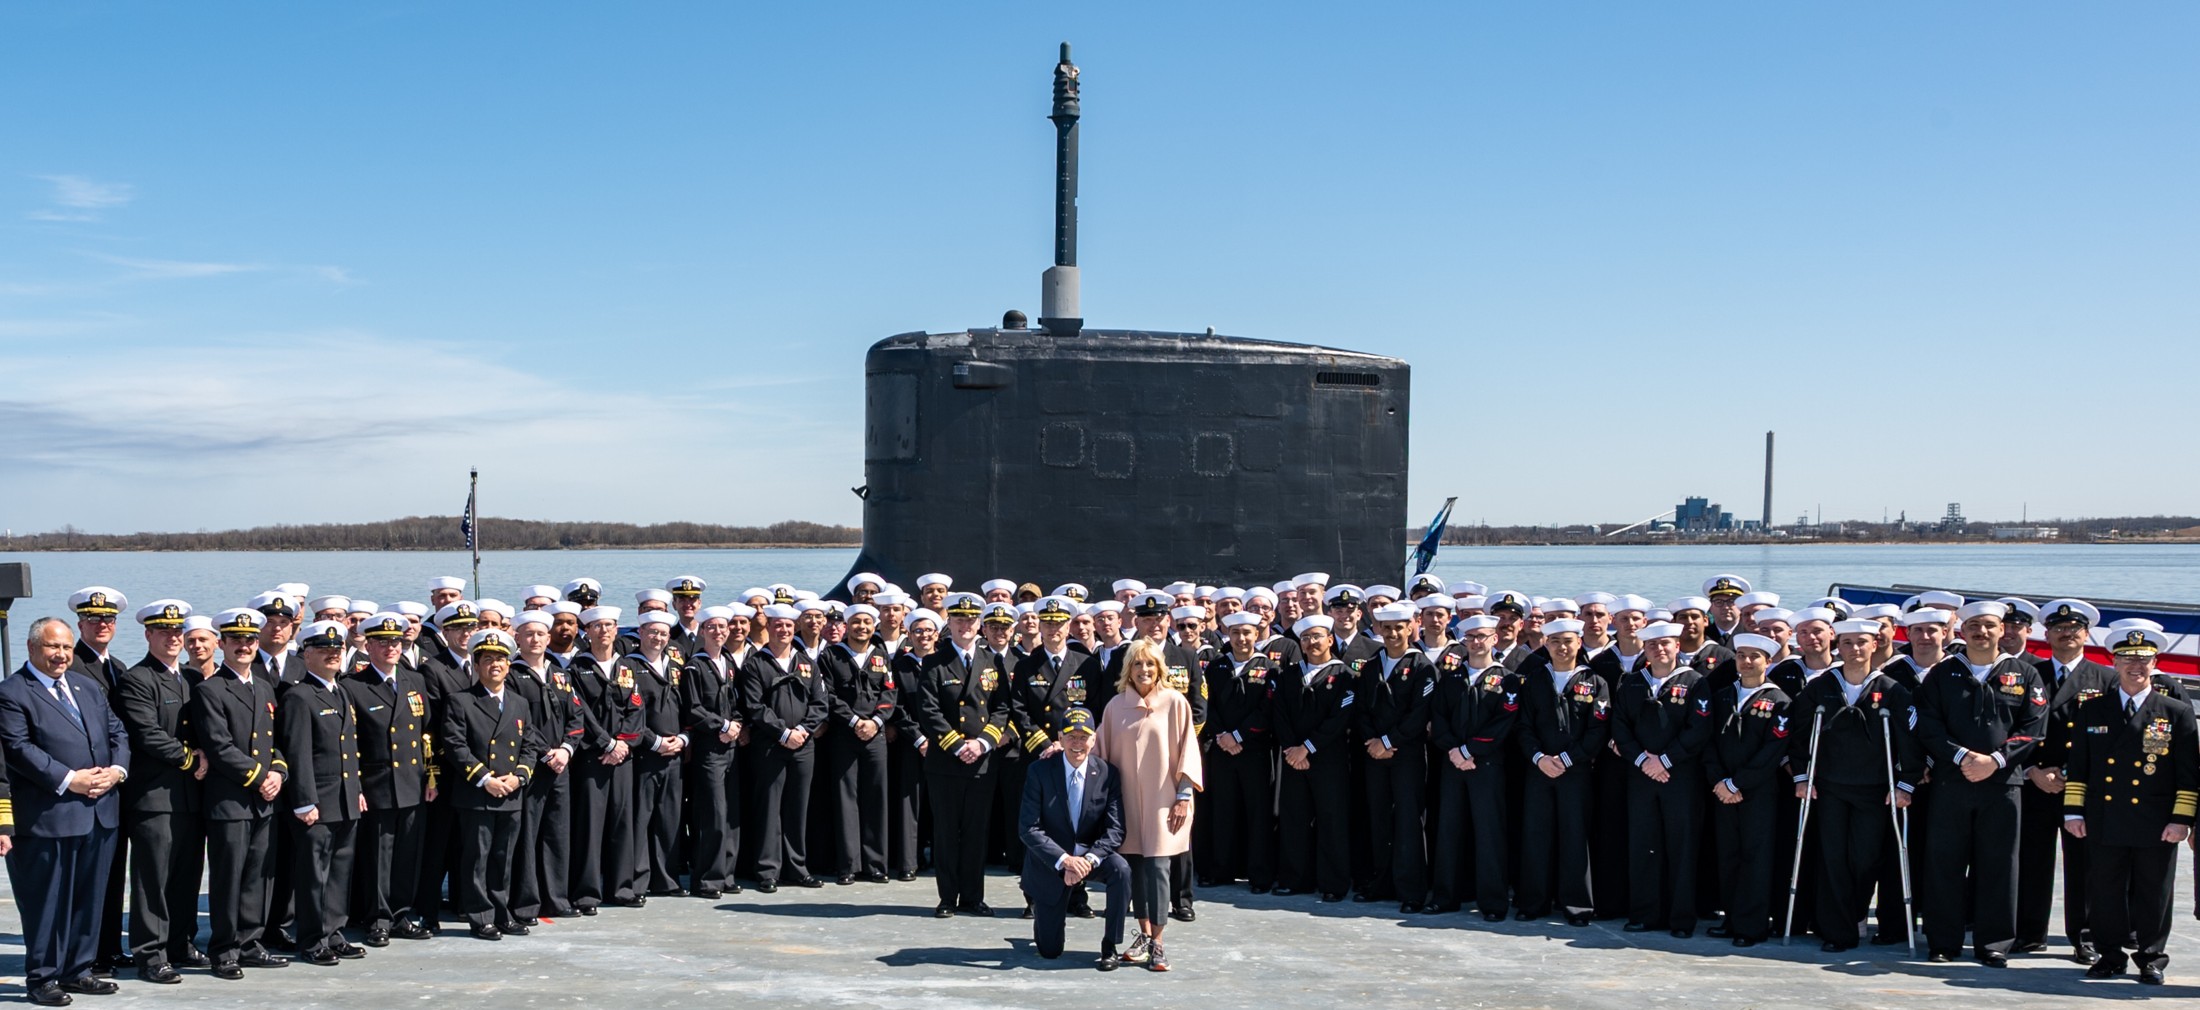 ssn-791 uss delaware virginia class attack submarine us navy 16 wilmington jill biden president